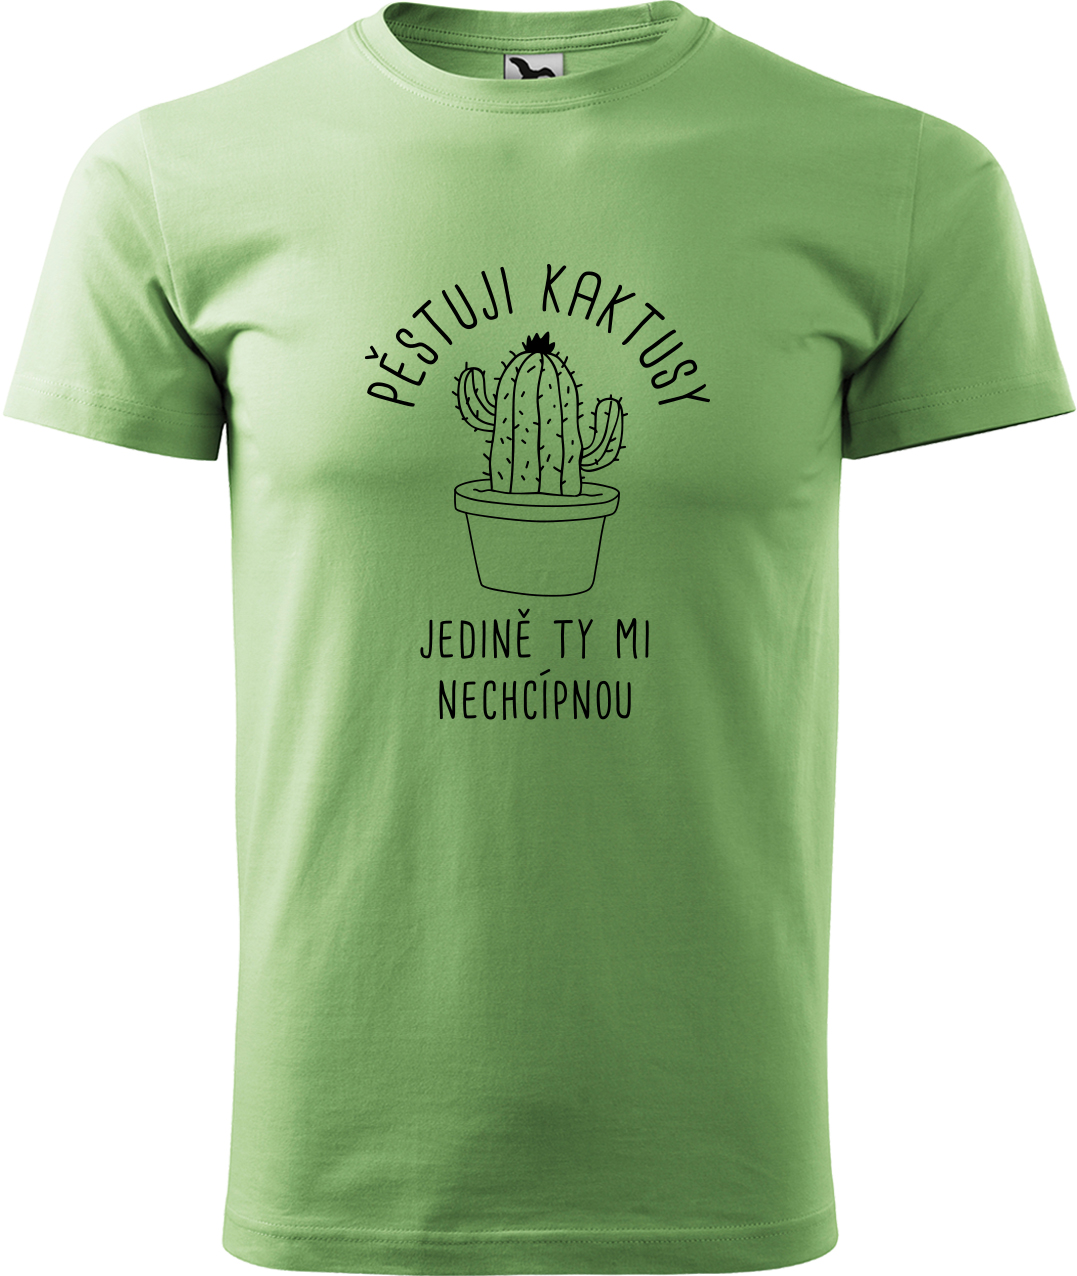 Tričko s kaktusem - Pěstuji kaktusy, jedině ty mi nechcípnou Velikost: L, Barva: Trávově zelená (39), Střih: pánský